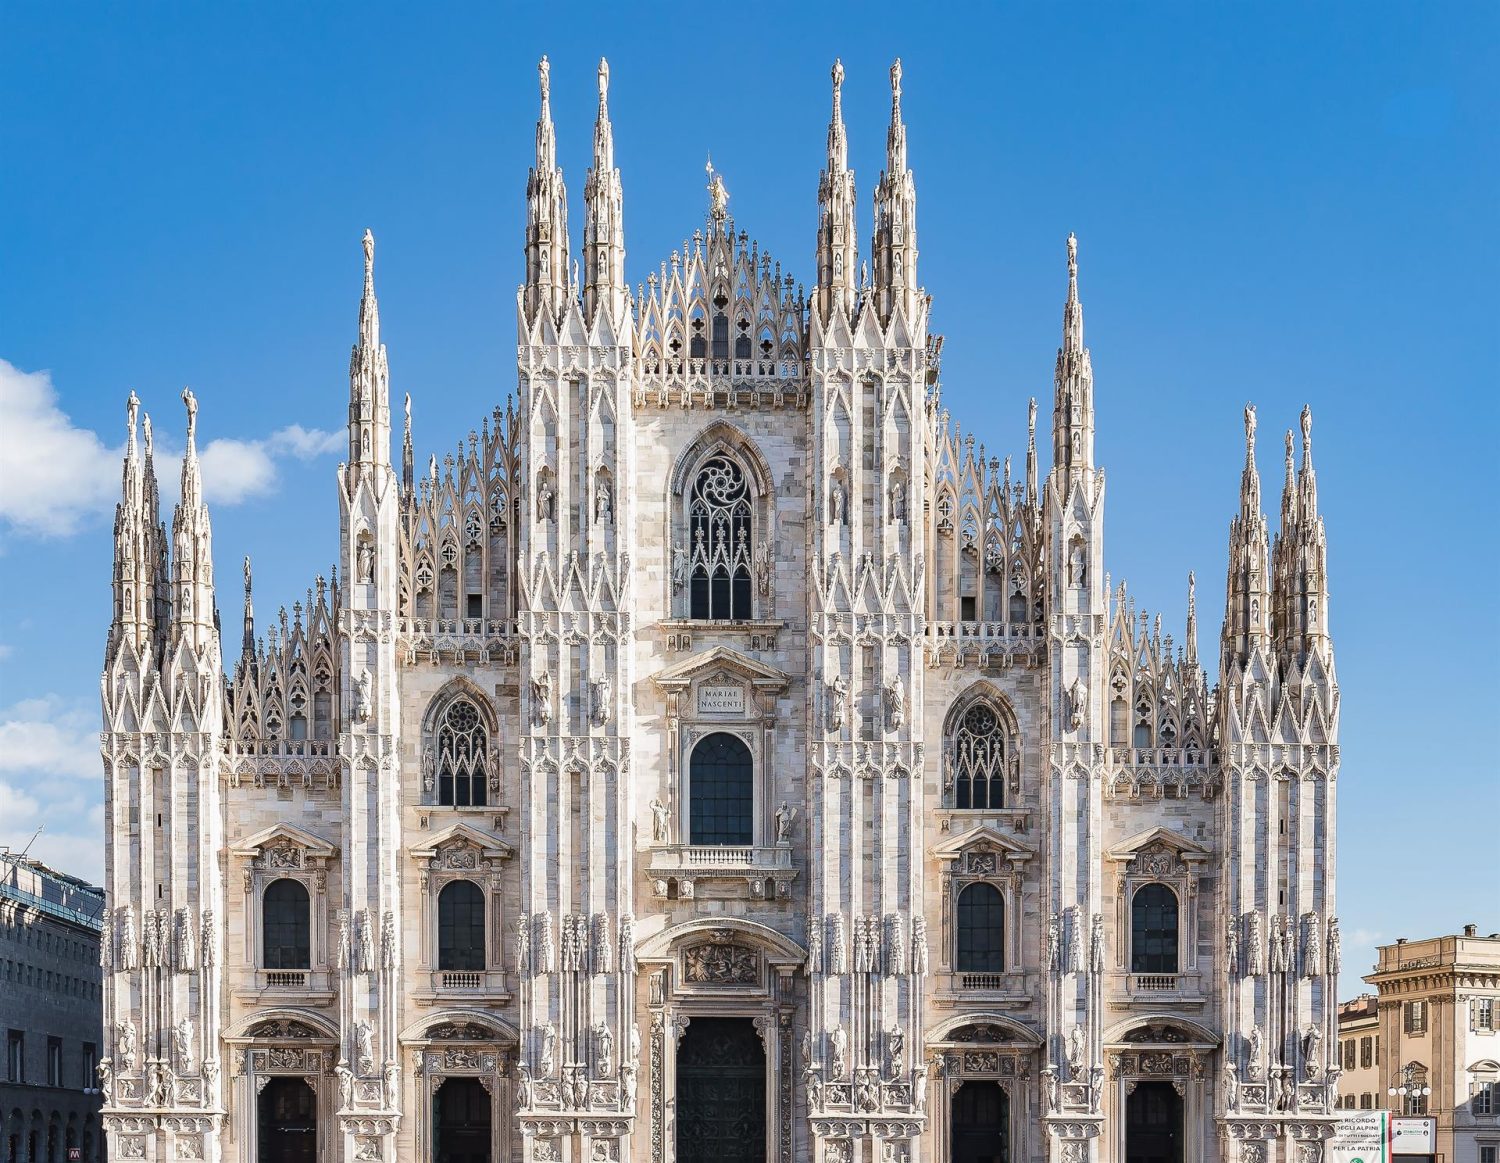 La Estructura Impresionante del Duomo